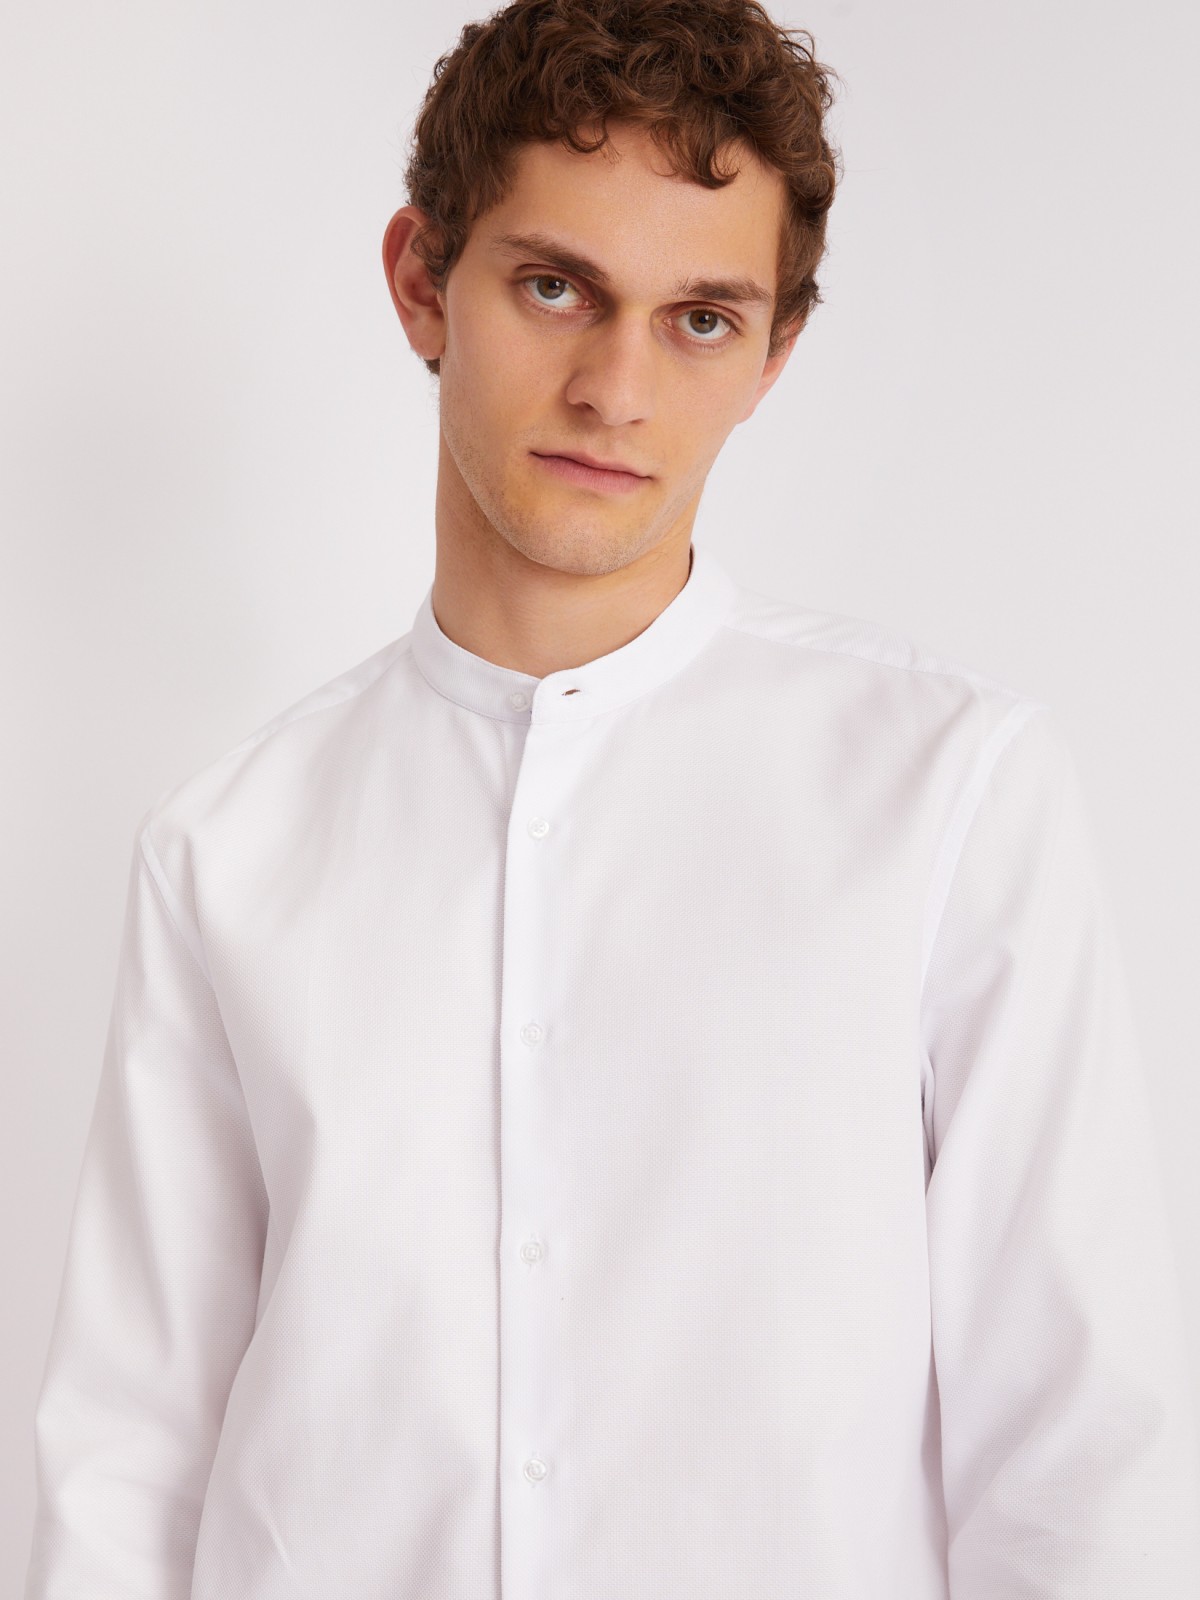 Офисная рубашка с воротником-стойкой и длинным рукавом zolla 013312159023, цвет белый, размер M - фото 3